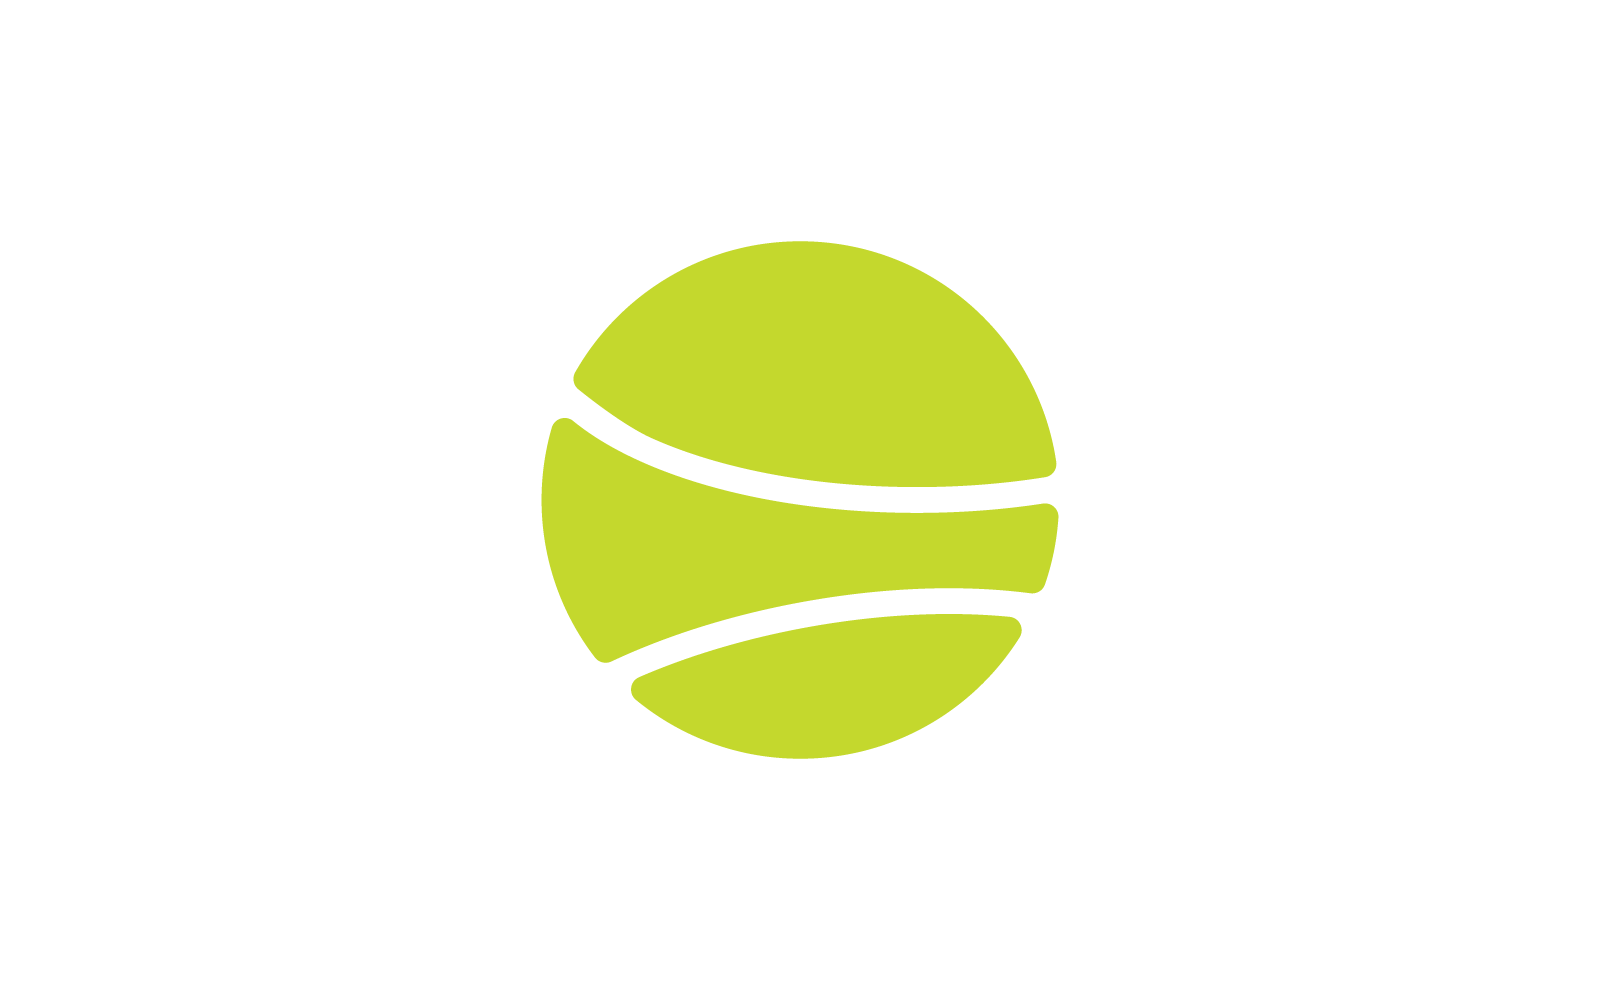 Tennisbal illustratie vector logo ontwerpsjabloon